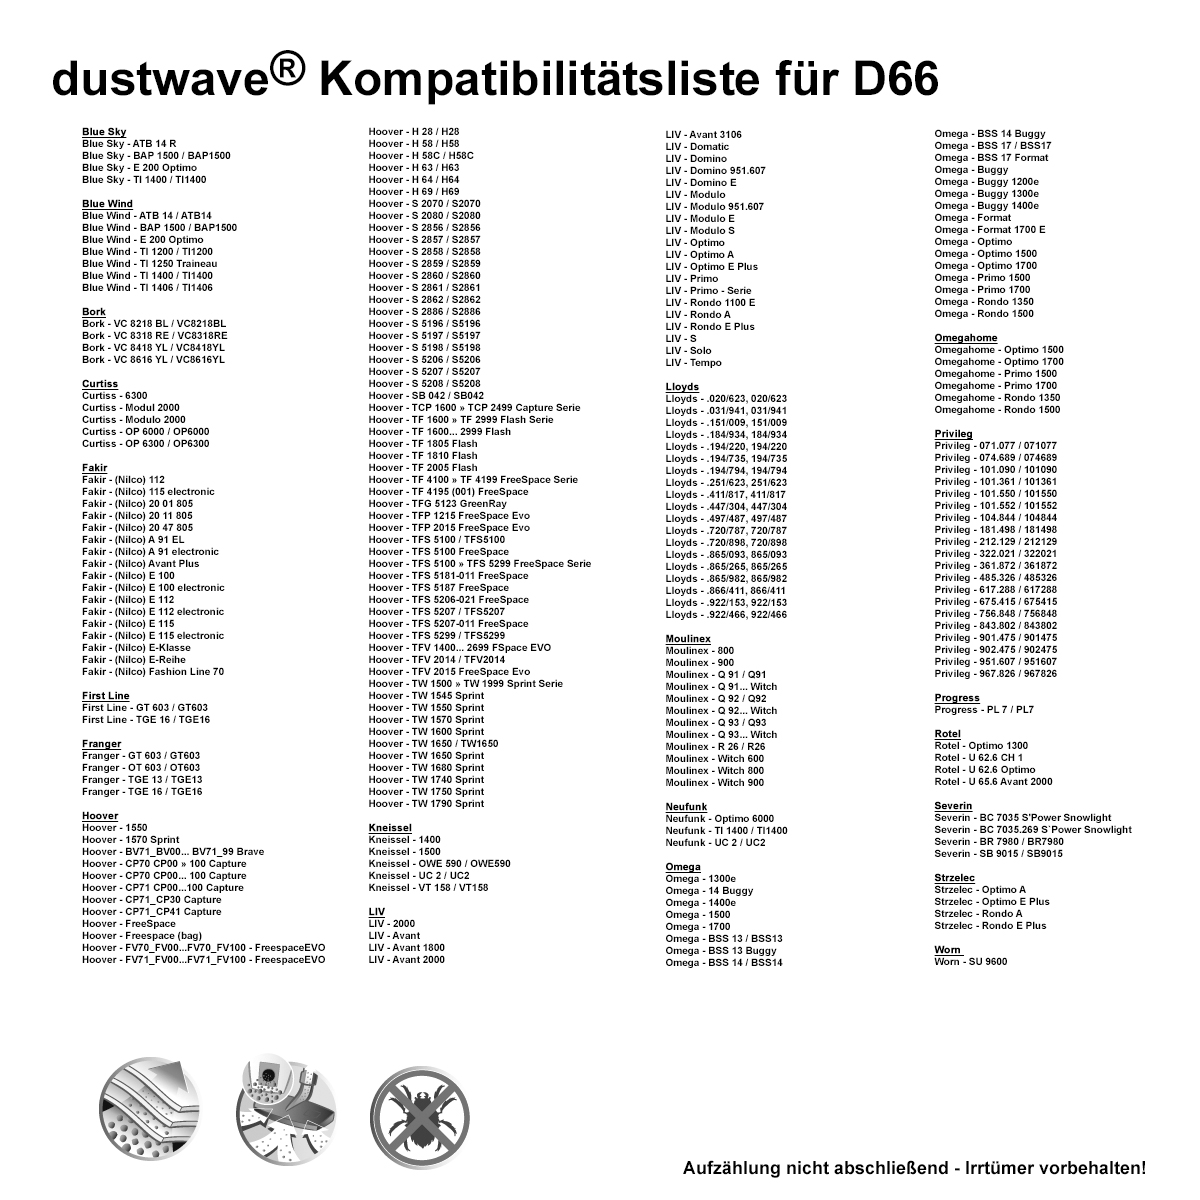 Dustwave® 20 Staubsaugerbeutel für Hoover TCP2012 011 - hocheffizient, mehrlagiges Mikrovlies mit Hygieneverschluss - Made in Germany